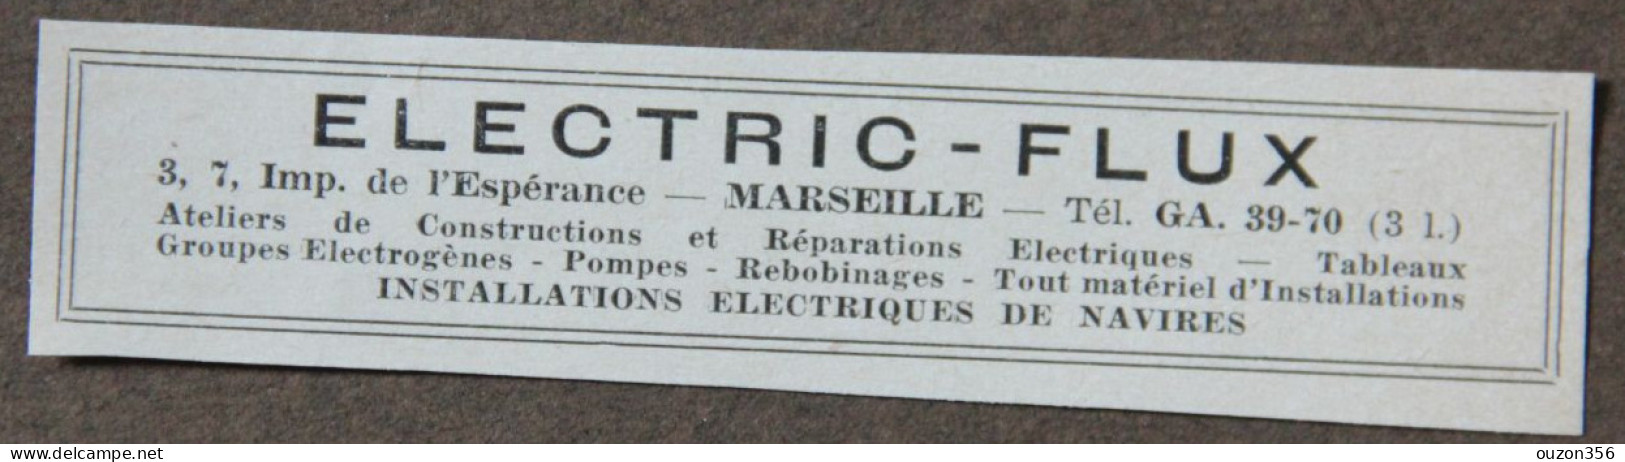 Publicité : ELECTRIC-FLUX, Electricité, Installations électriques De Navires, Marseille, 1951 - Werbung